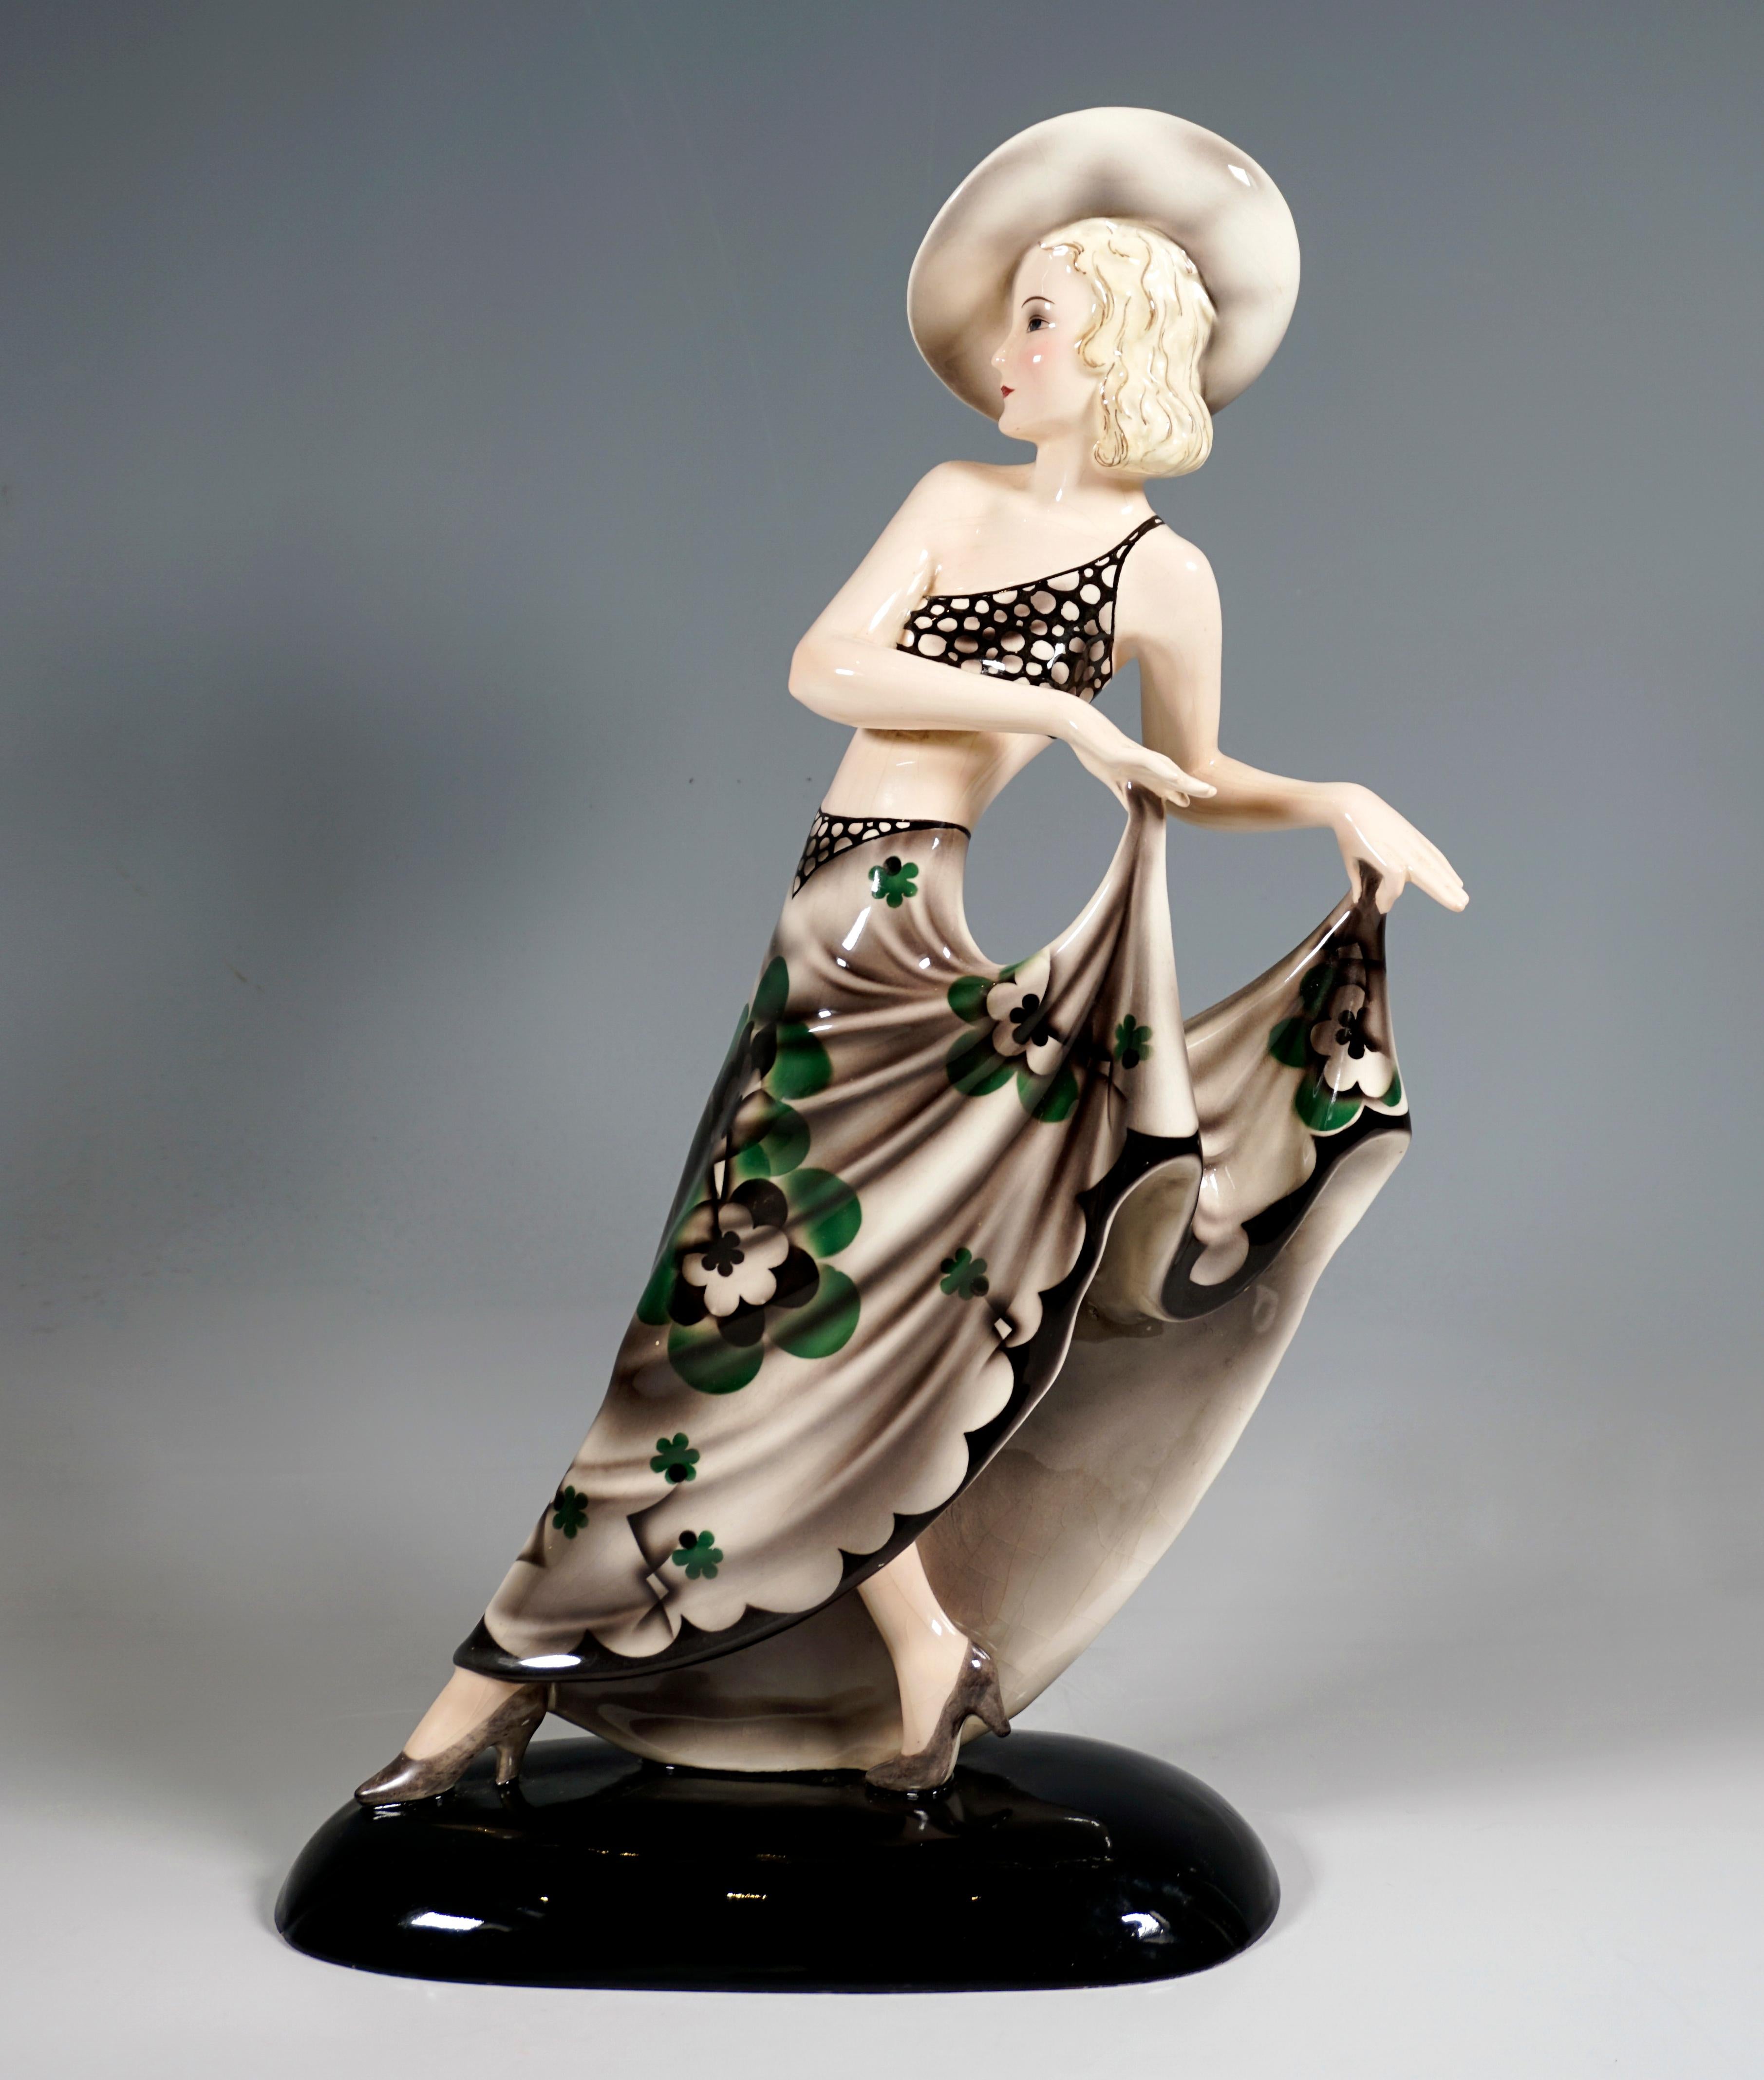 Ausgezeichnete Kunstkeramikfigur aus den 1930er Jahren:
Schreitende junge Dame mit zart geschnittenem Oberteil und großem Hut, die mit beiden Händen den langen, weiten Rock mit stilisiertem Blumenmuster hochhält.
Auf schwarzem ovalem Sockel,